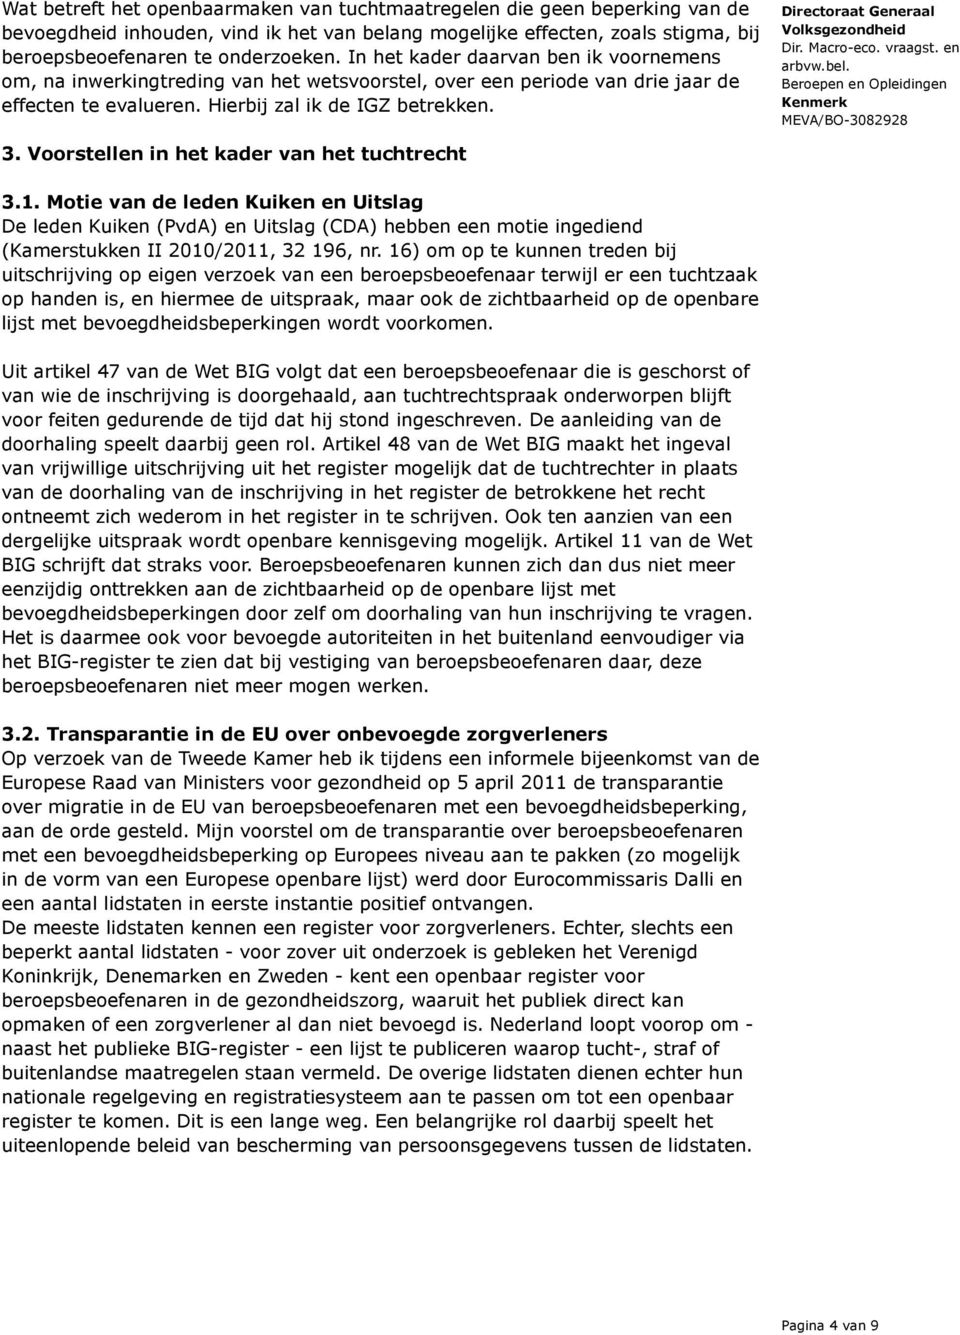 Voorstellen in het kader van het tuchtrecht 3.1. Motie van de leden Kuiken en Uitslag De leden Kuiken (PvdA) en Uitslag (CDA) hebben een motie ingediend (Kamerstukken II 2010/2011, 32 196, nr.